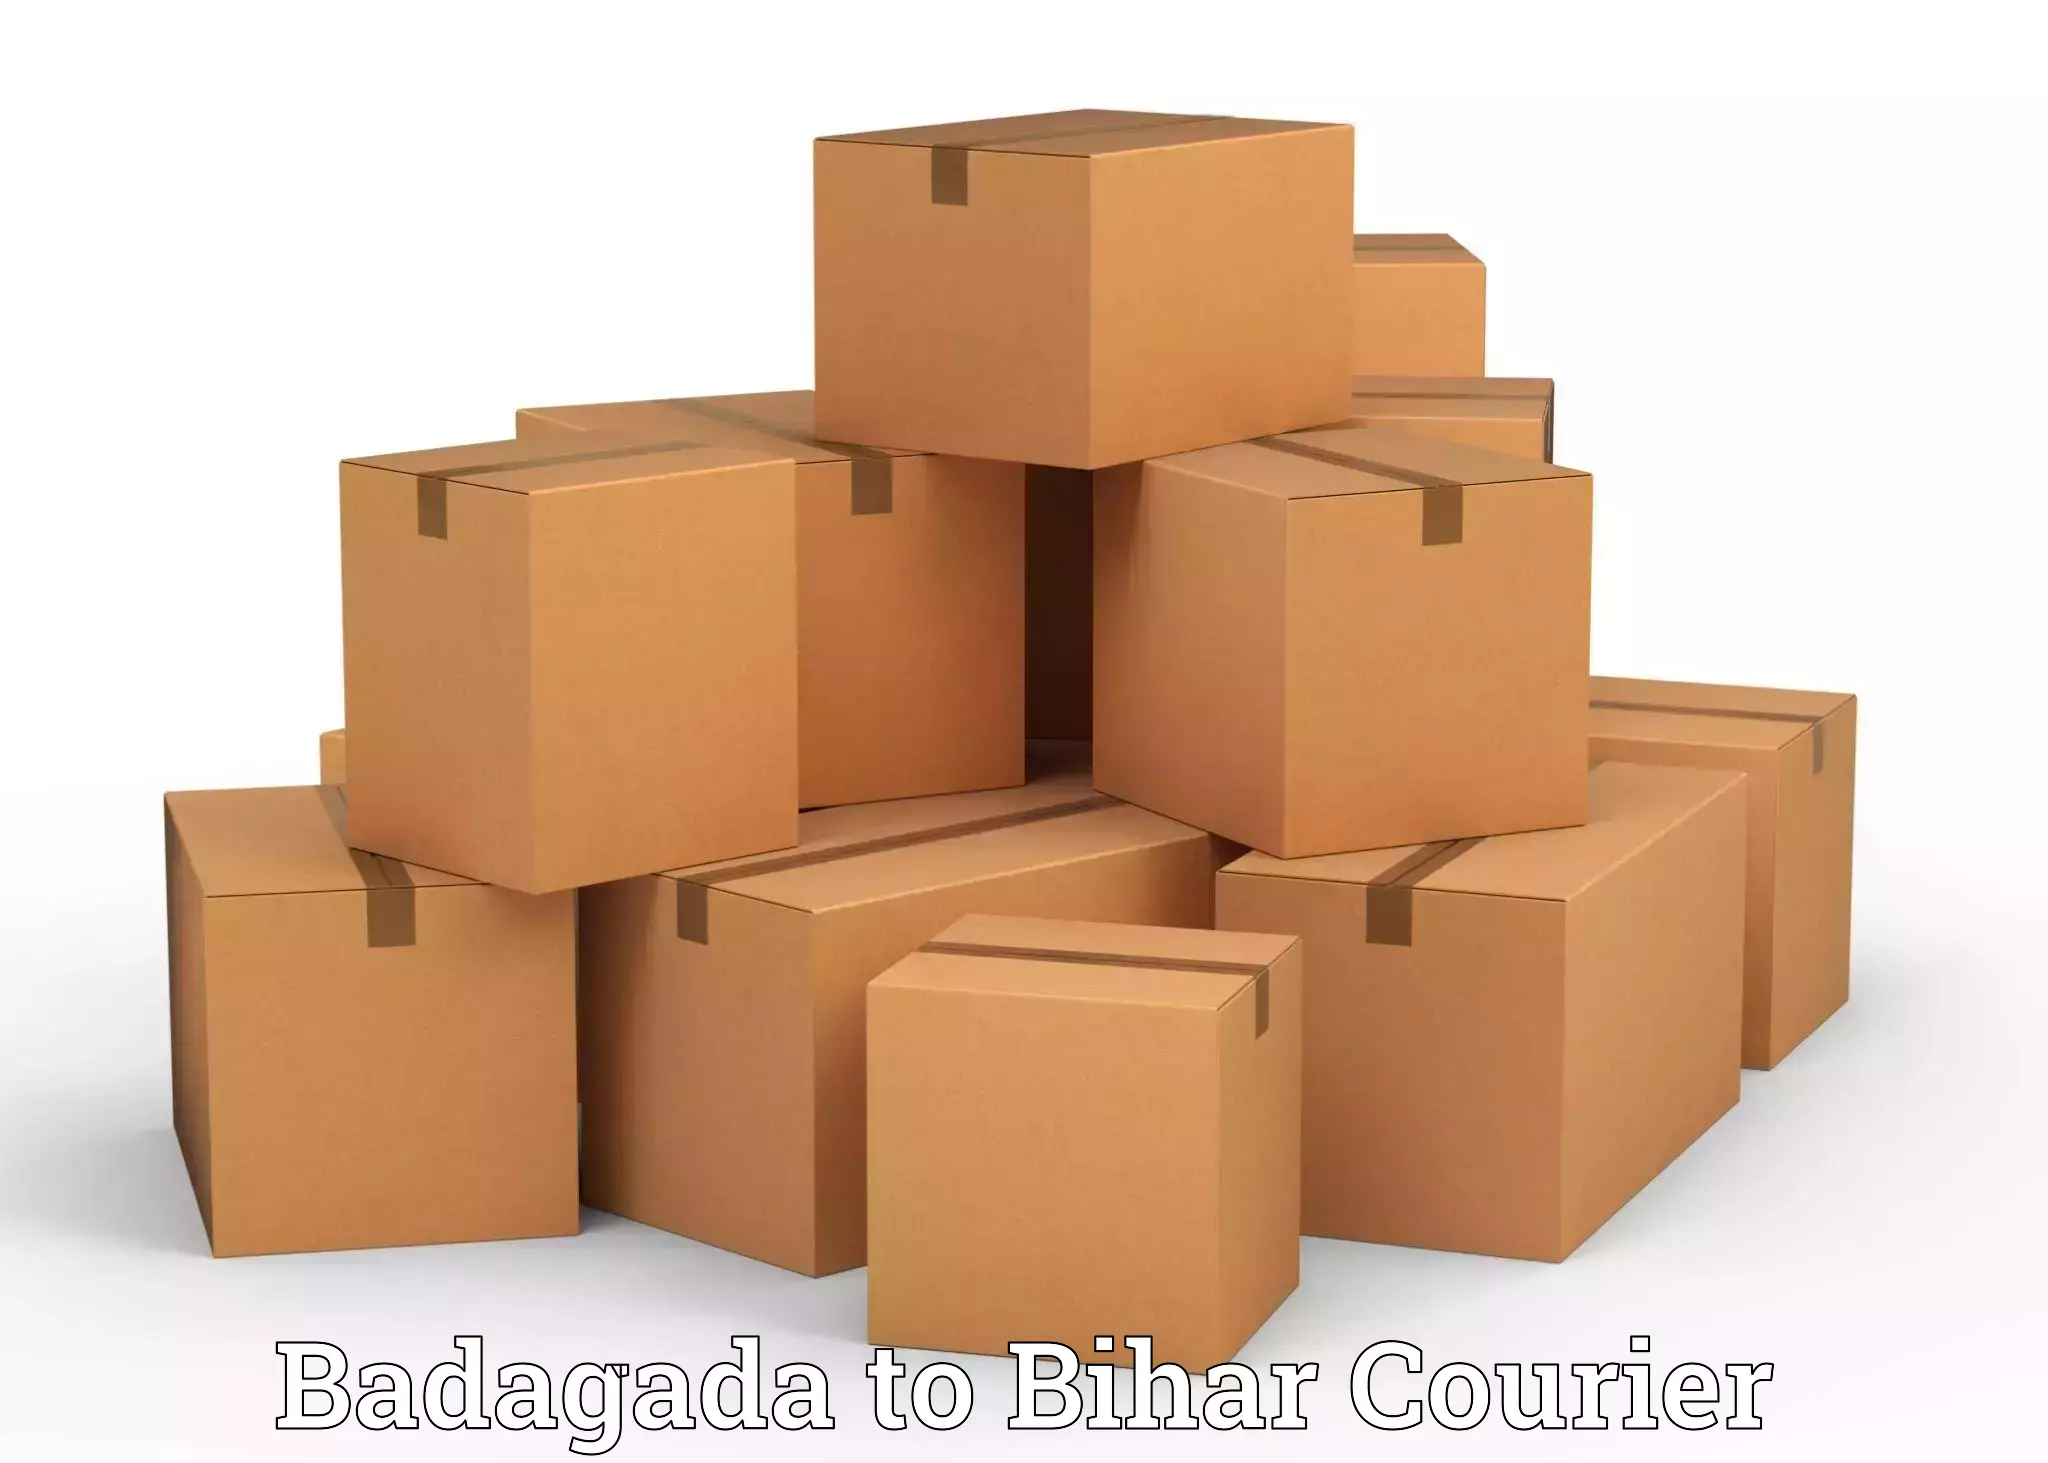 Home moving solutions Badagada to Bihar